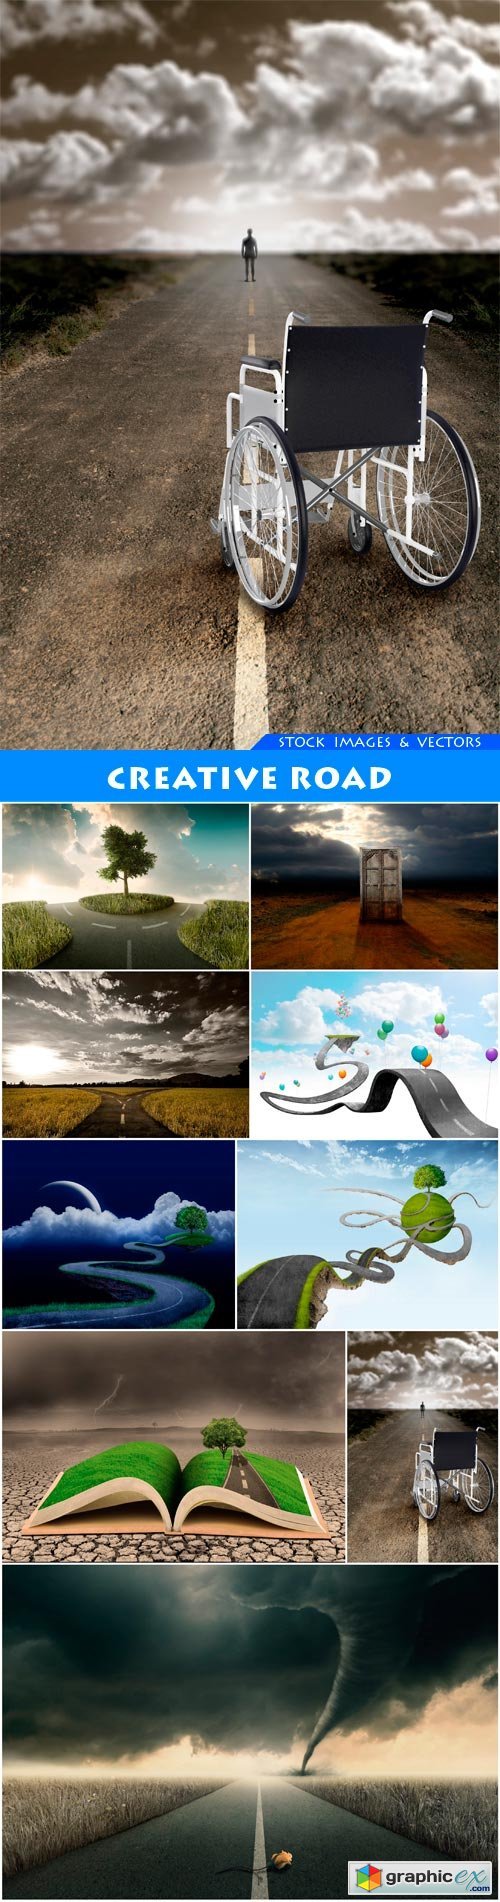 Creative road 9X JPEG